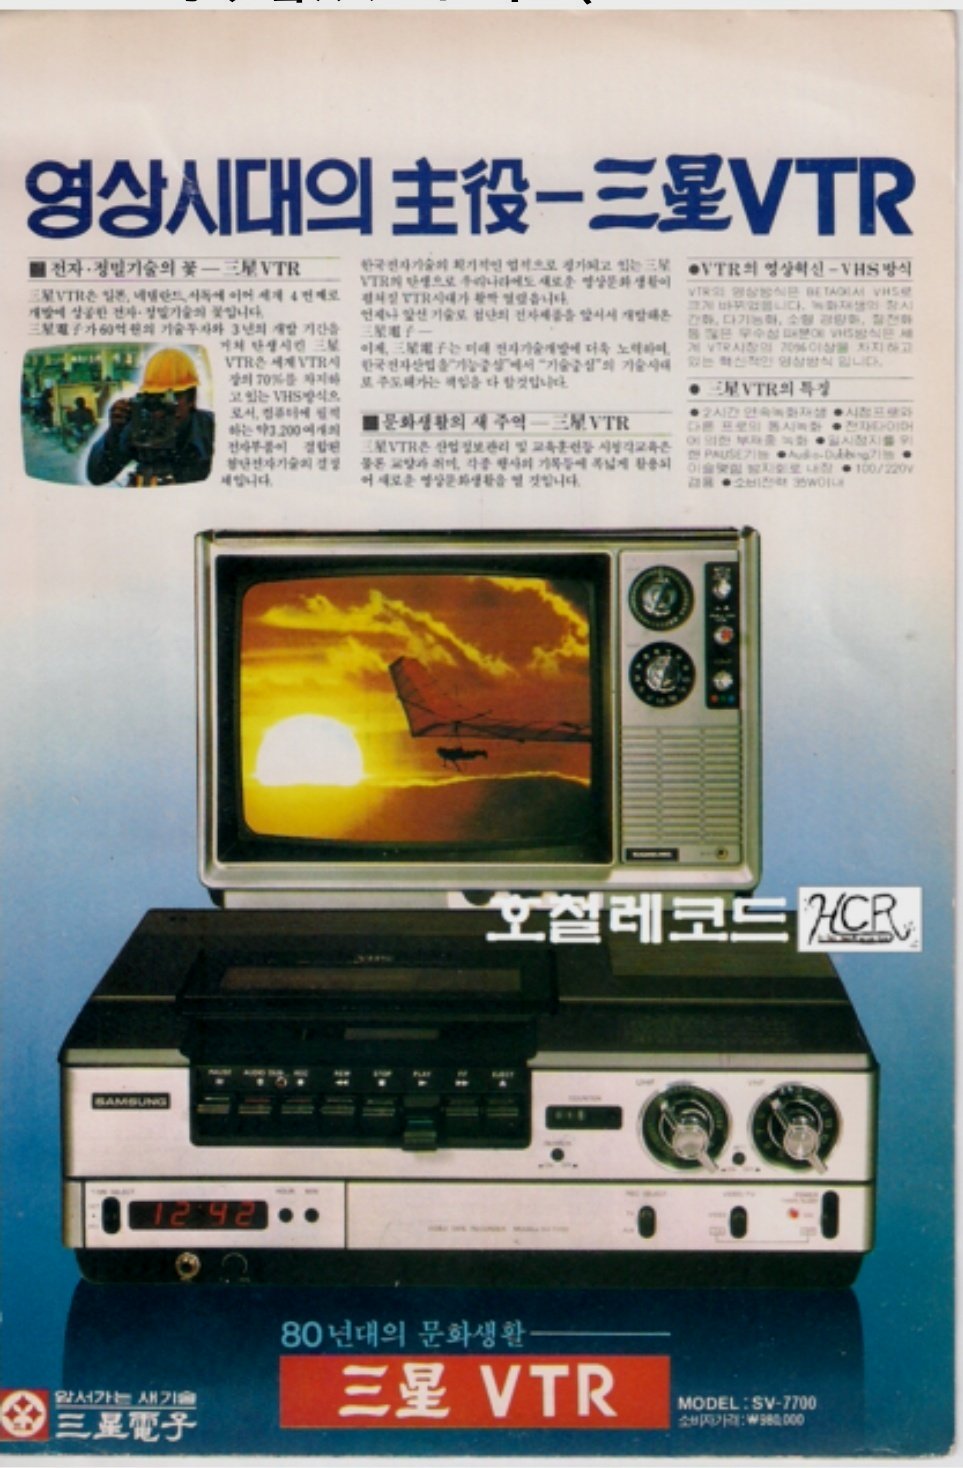 三星通过引进JVC专利技术于1979年投产的录像机